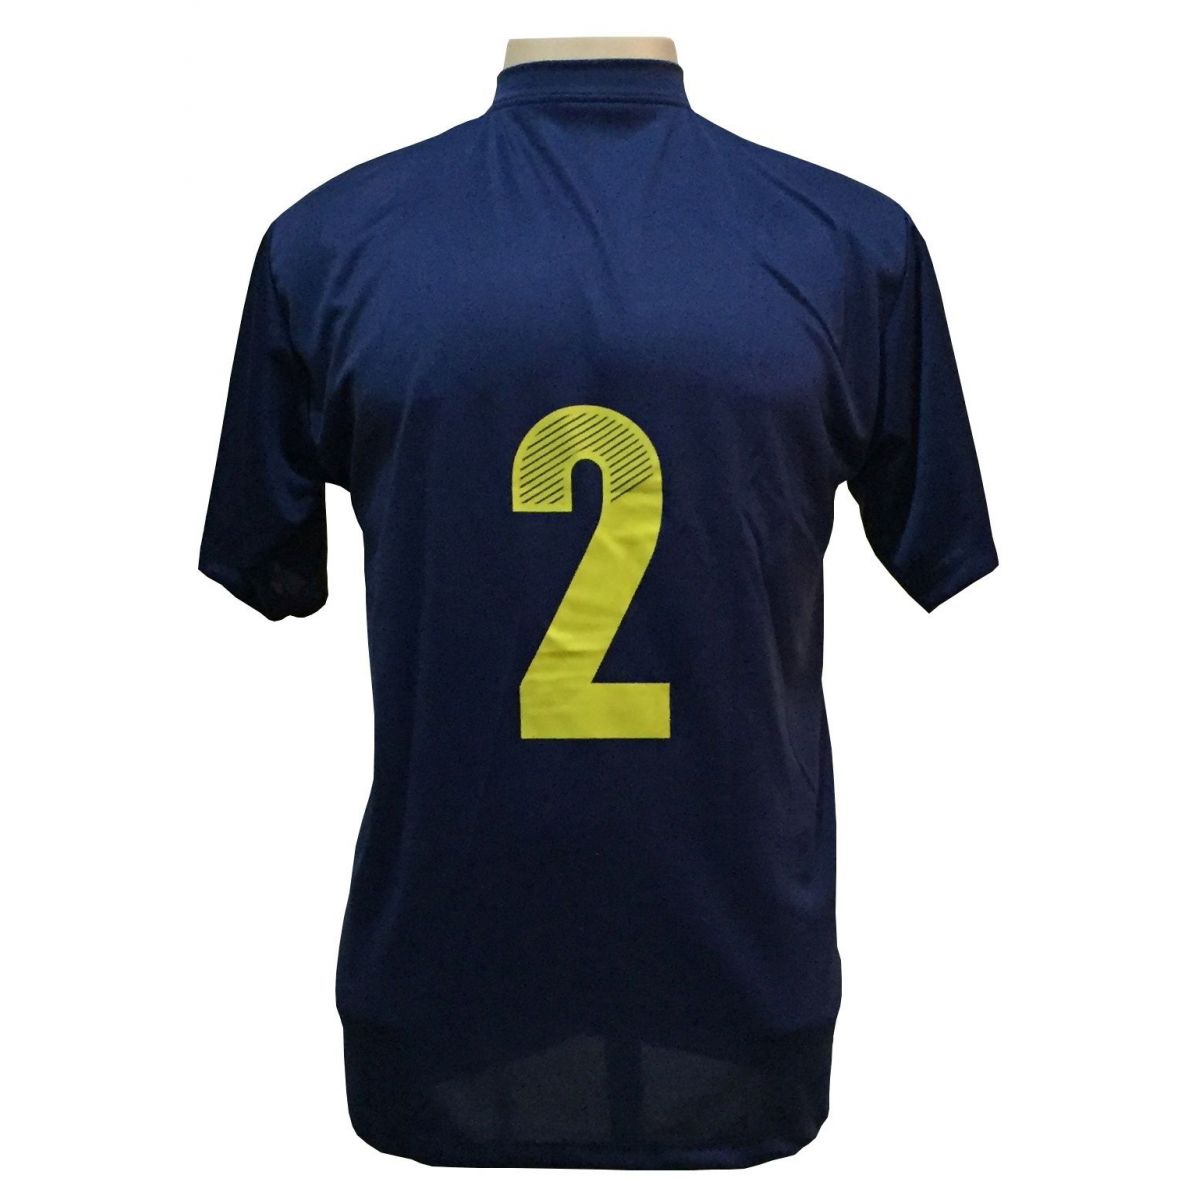 Uniforme Esportivo Completo modelo Boca Juniors 14+1 (14 camisas Marinho/Amarelo + 14 calções Madrid Amarelo + 14 pares de meiões Amarelos + 1 conjunto de goleiro) + Brindes